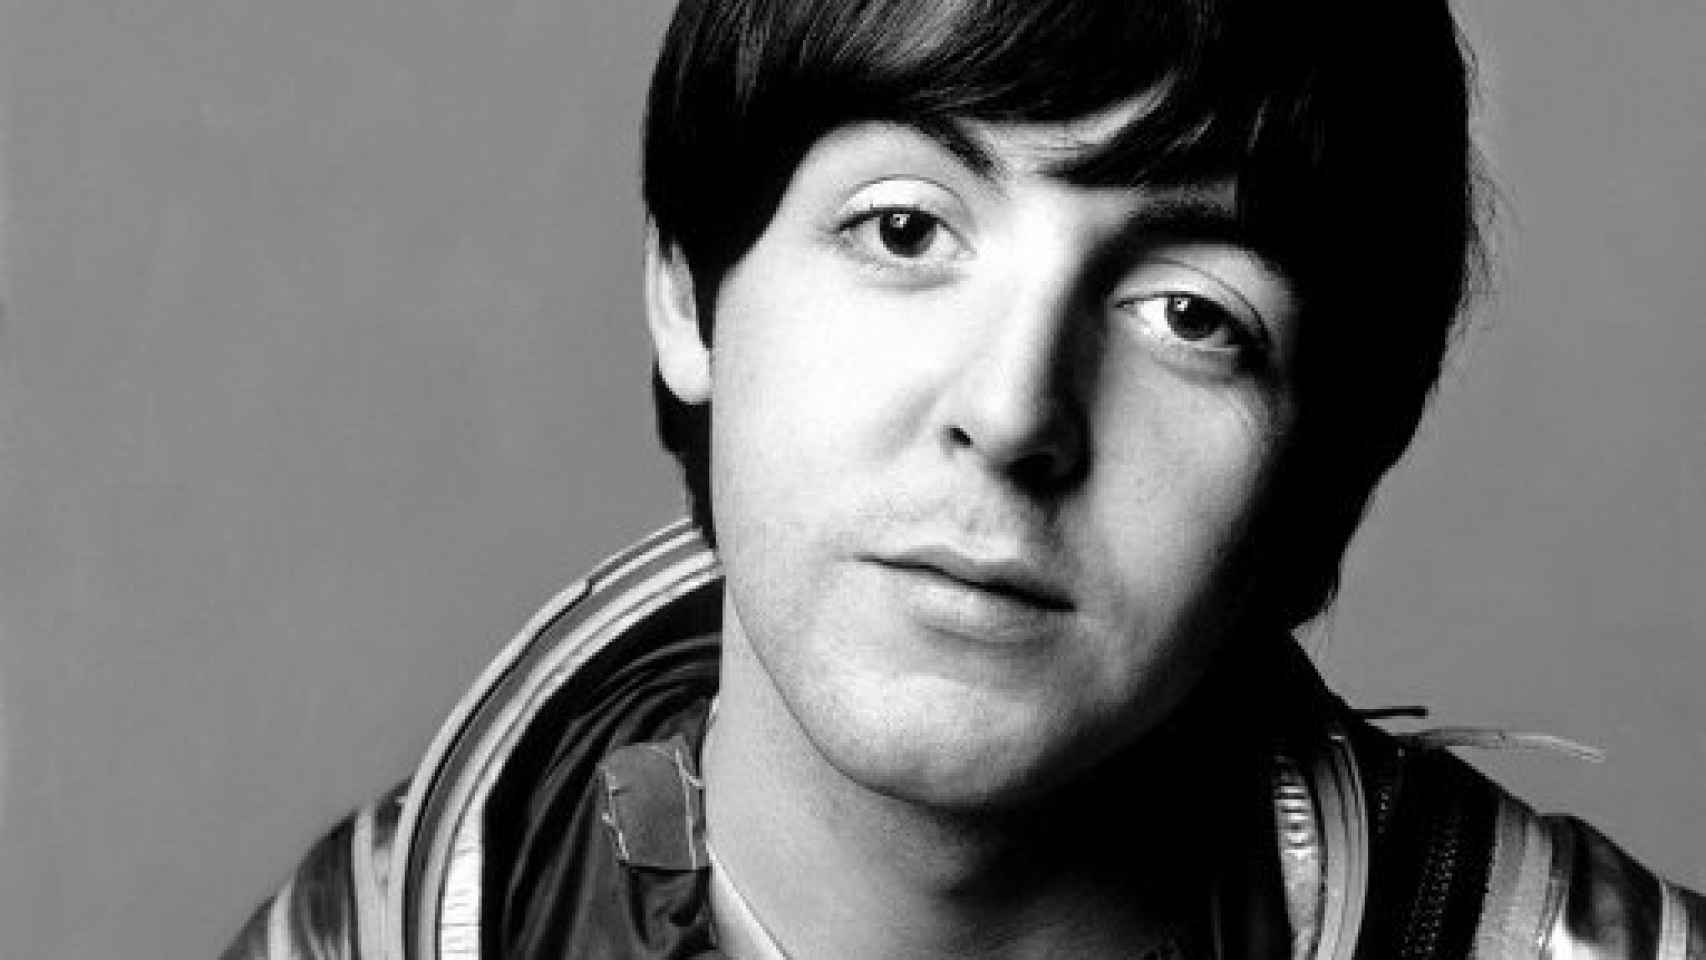 Image: Paul McCartney. La biografía